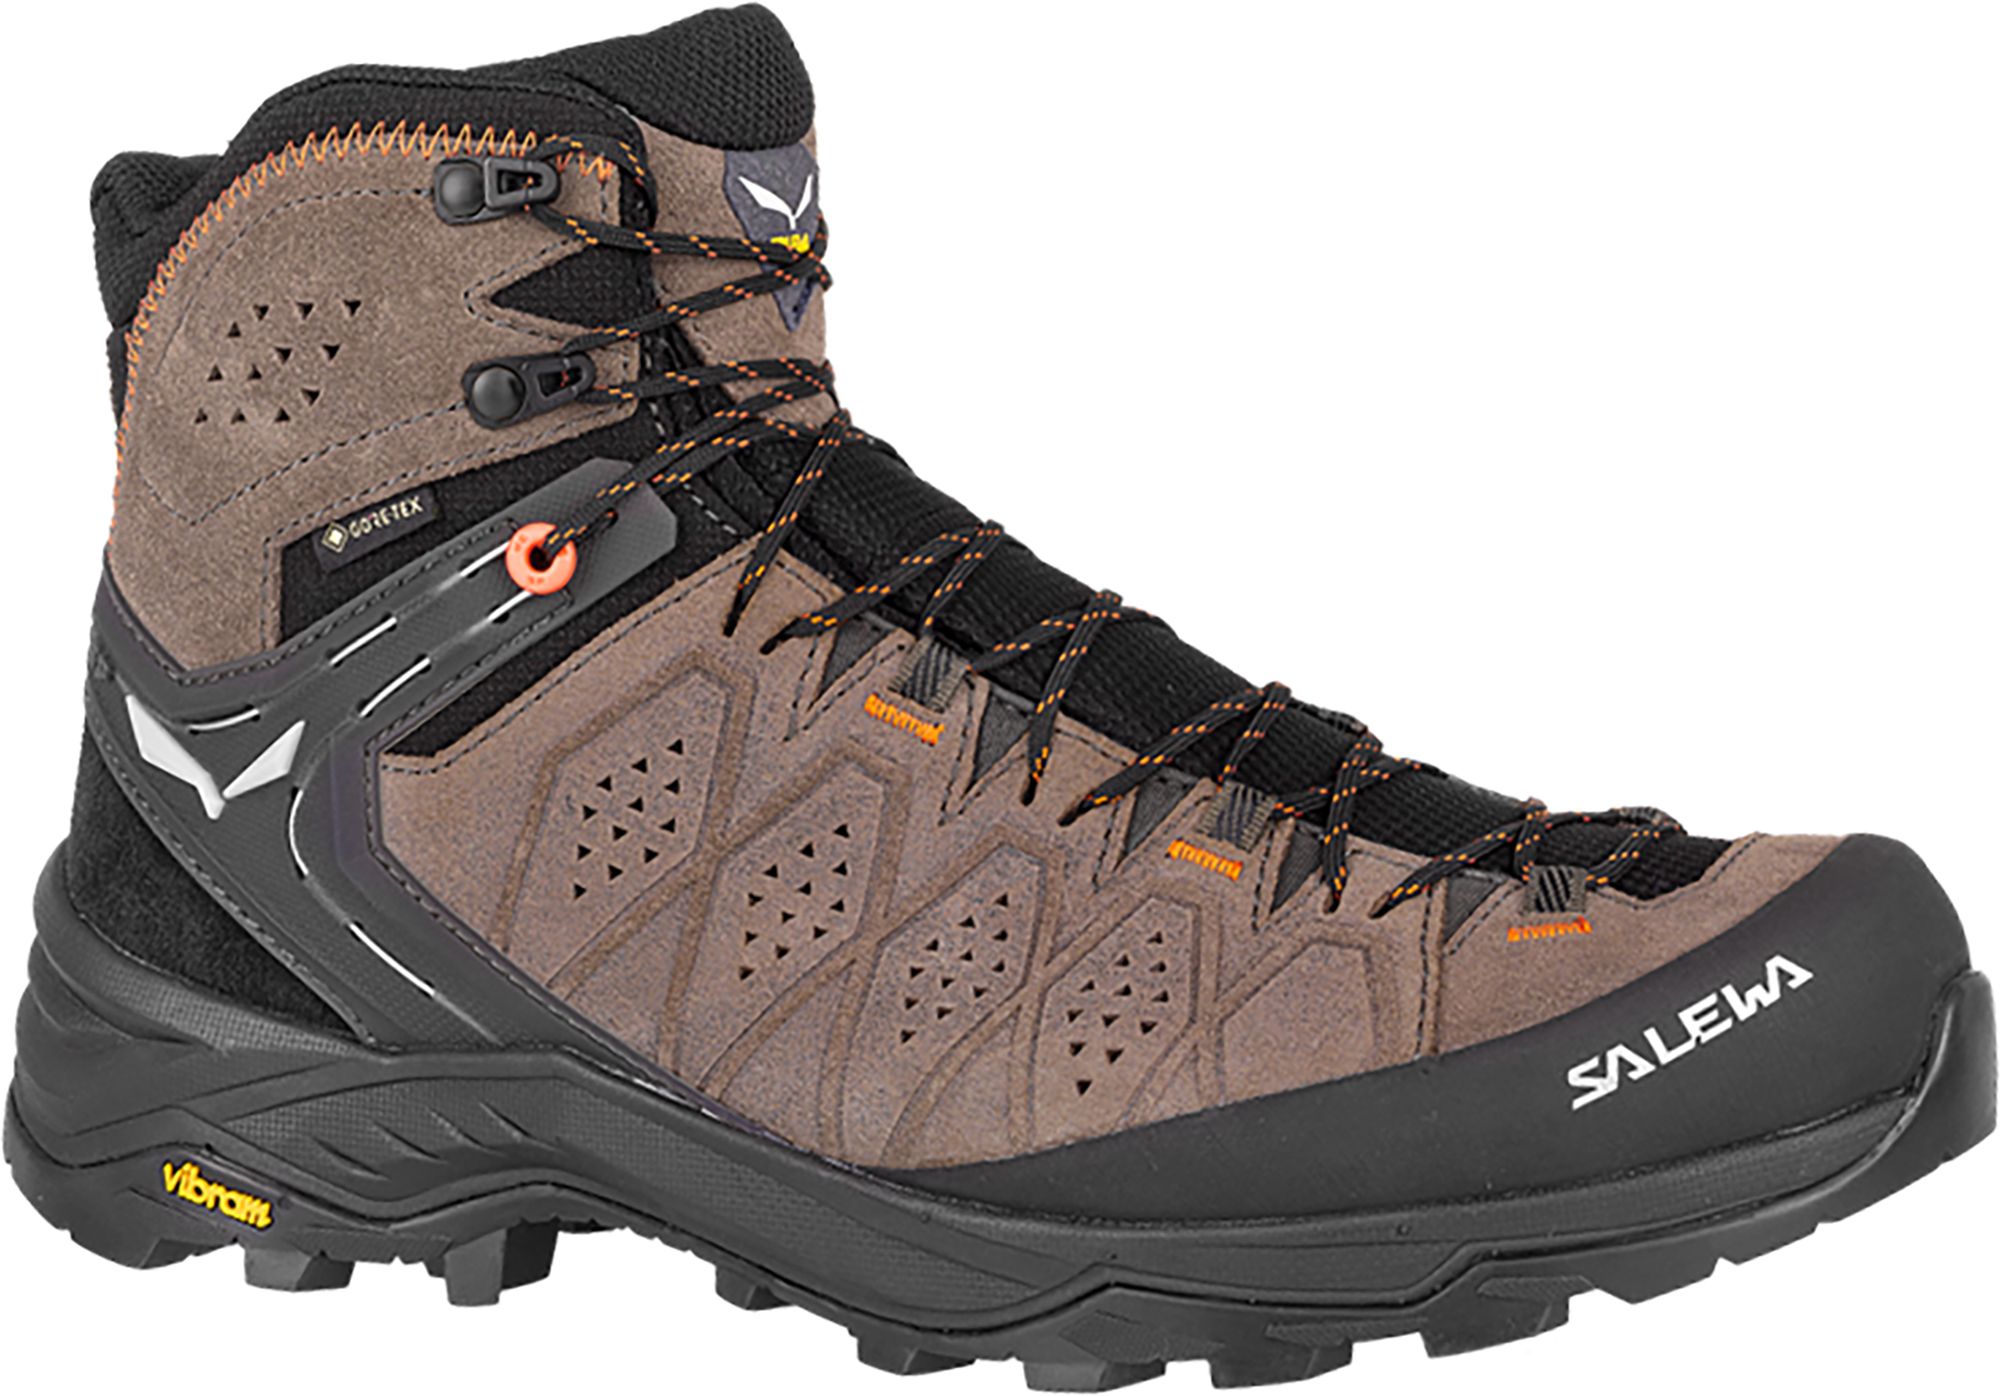 Photos - Trekking Shoes Salewa Men's Alp Trainer 2 GTX Hiking Boots, Size 12, Walnut 22IYPMMLPTRNR 